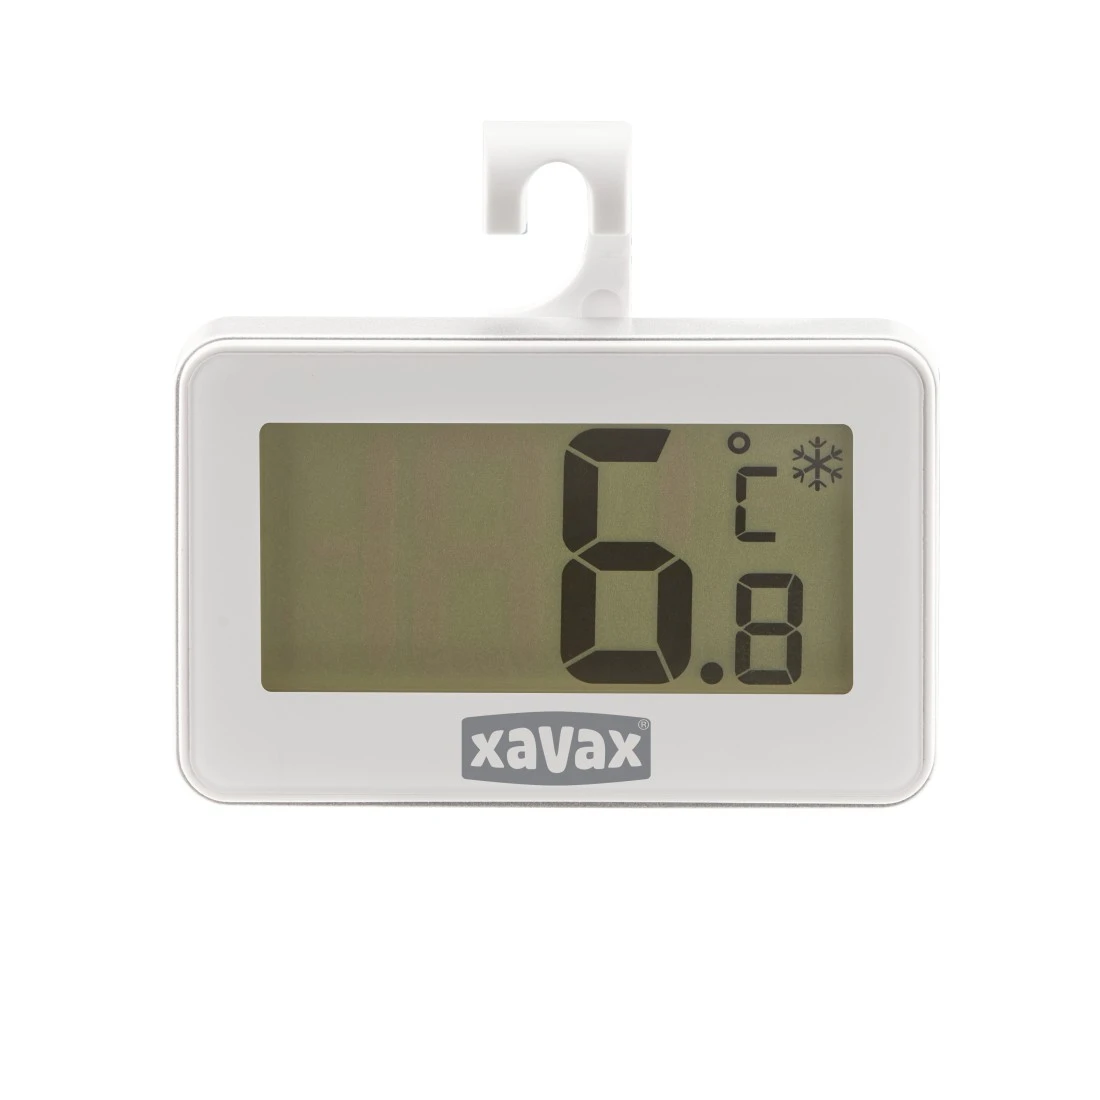 abx2 Druckfähige Abbildung 2 - Xavax, Digitales Thermometer für Kühlschrank, Gefrierschrank und Kühltruhe, Weiß